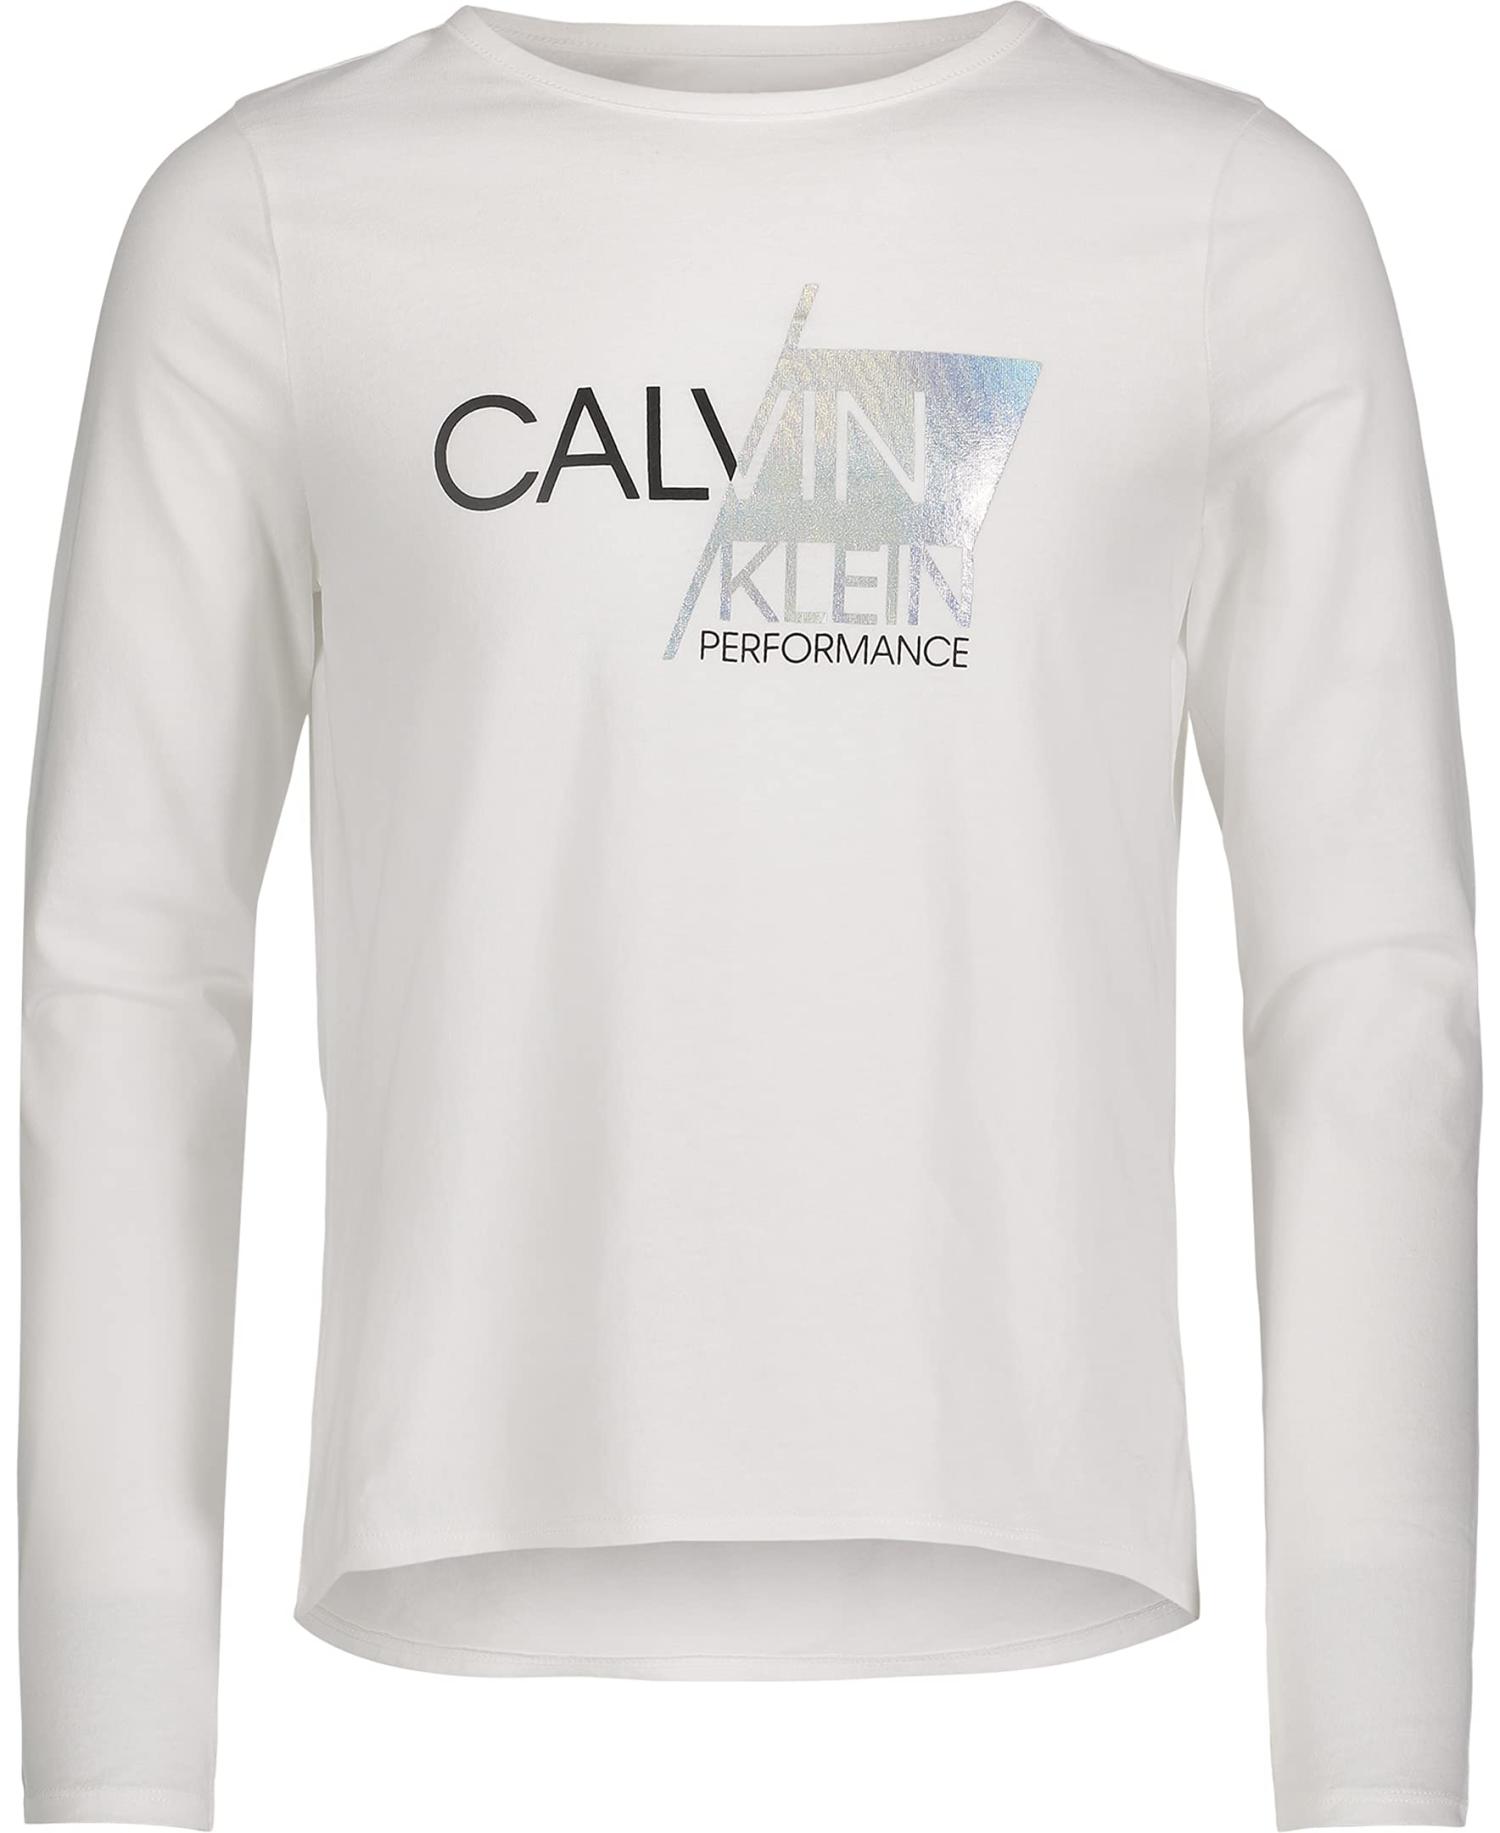 Performance Slant White 8-10 Sport Sleeve Klein Calvin T-Shirt Girls\' Long